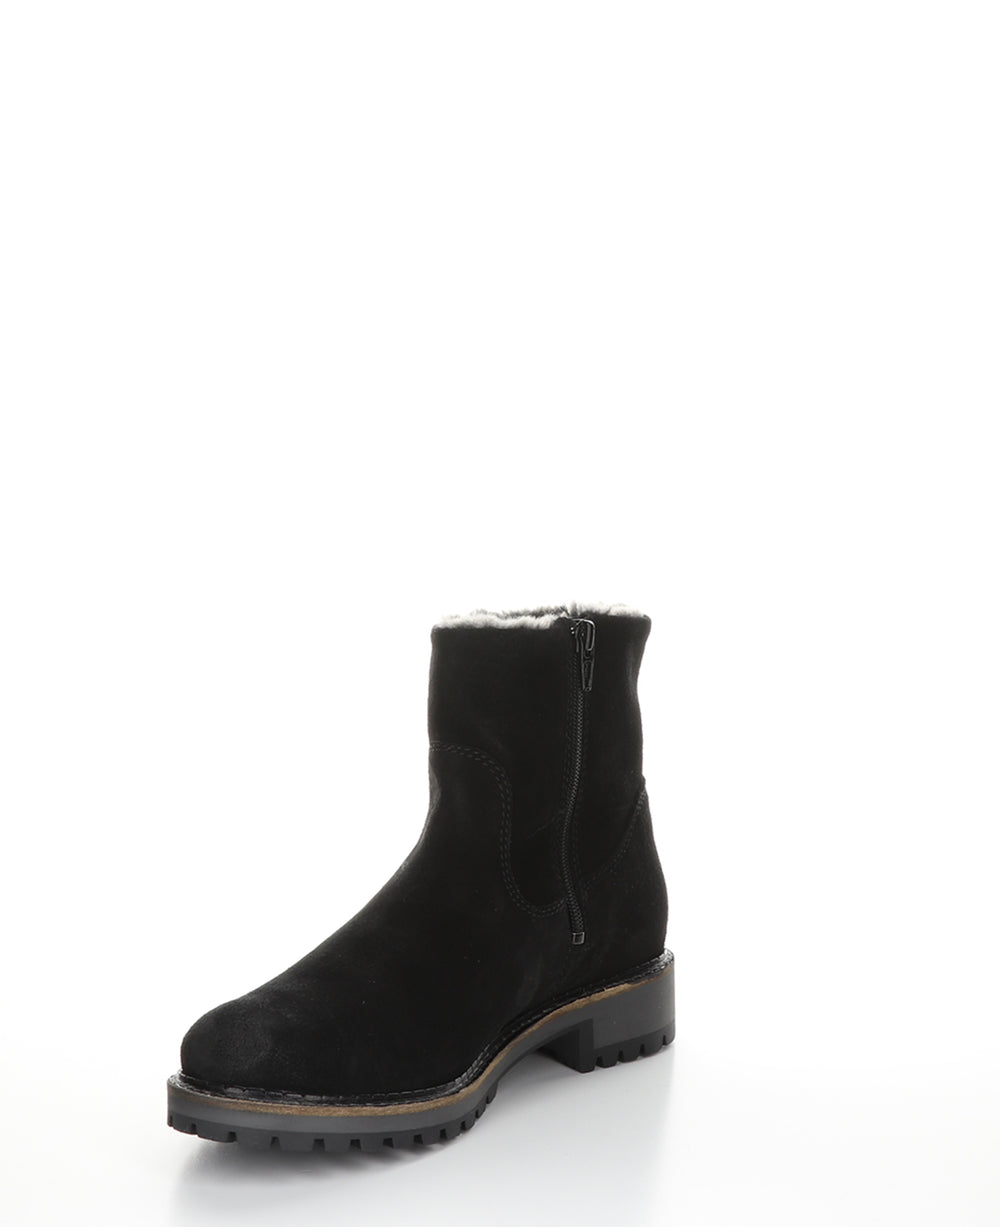 CALIB Black Zip Up Boots|CALIB Bottes avec Fermeture Zippée in Noir